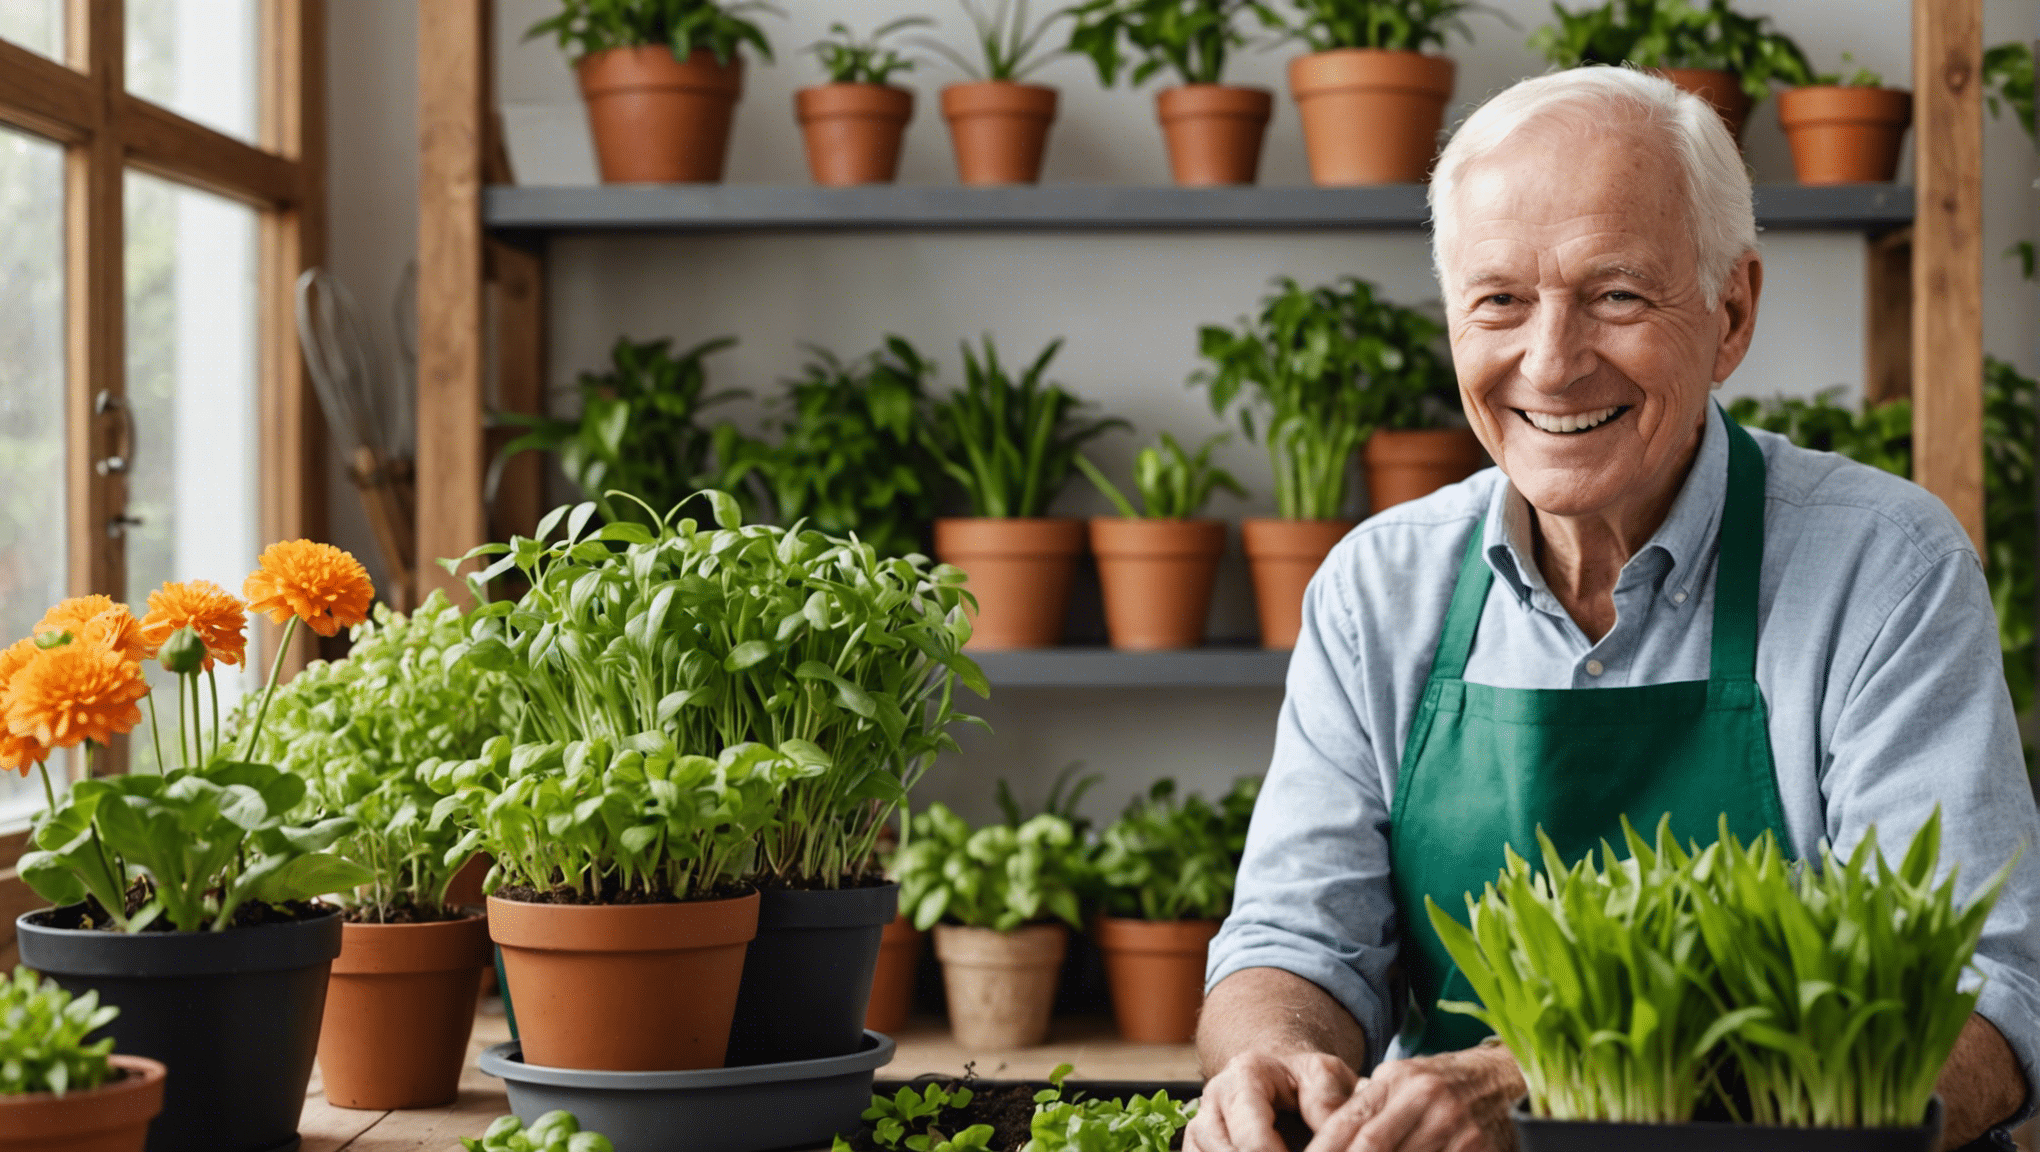 descubra os benefícios das ideias de jardinagem interna para idosos e como elas podem melhorar seu bem-estar geral e qualidade de vida.